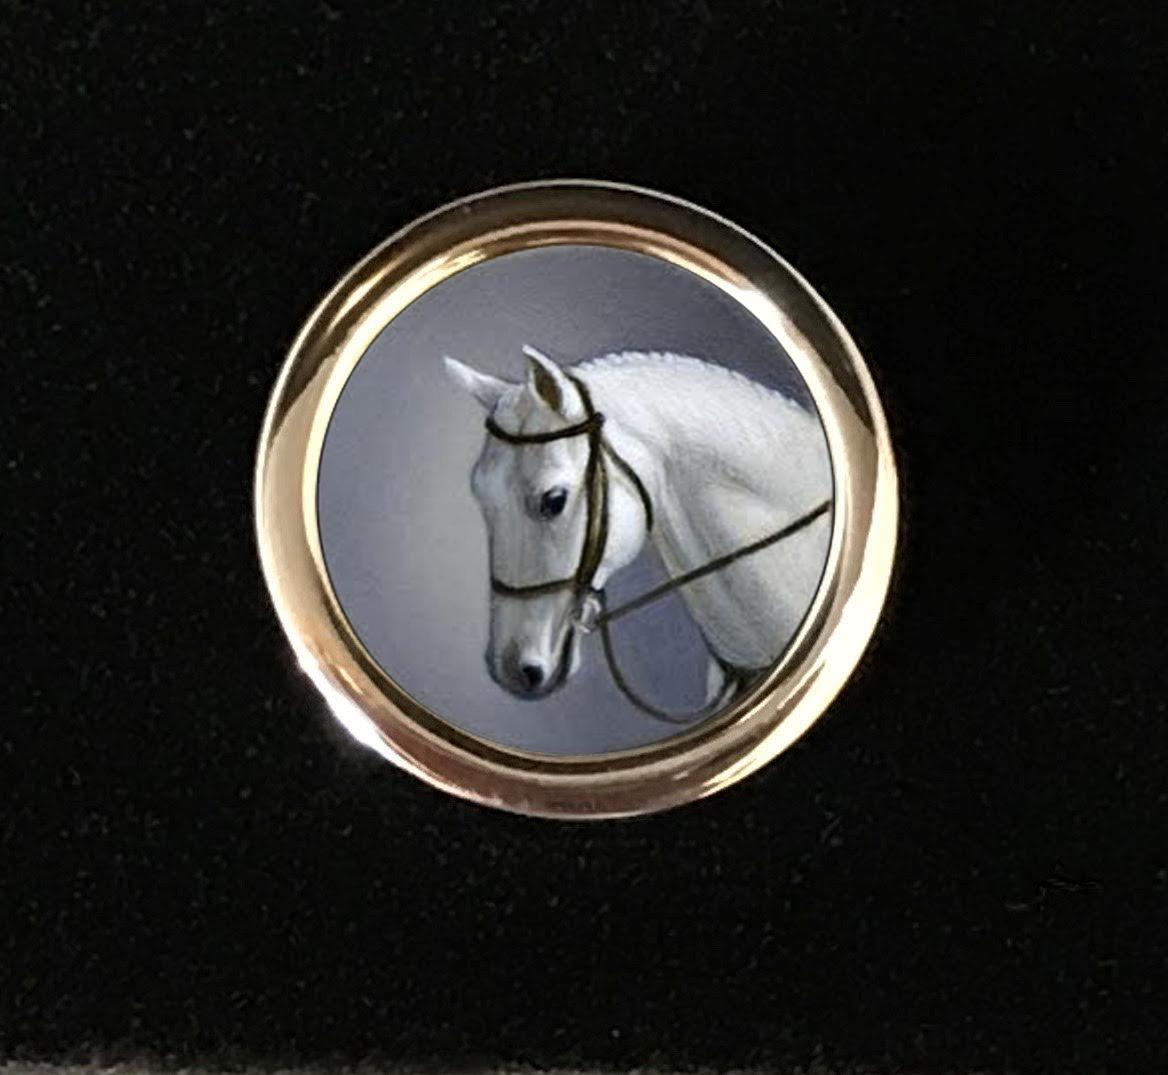 Artist Beth De Loiselle Miniature Horse Oils in Paul Eaton Bespoke Sterling Cufflinks For Sale